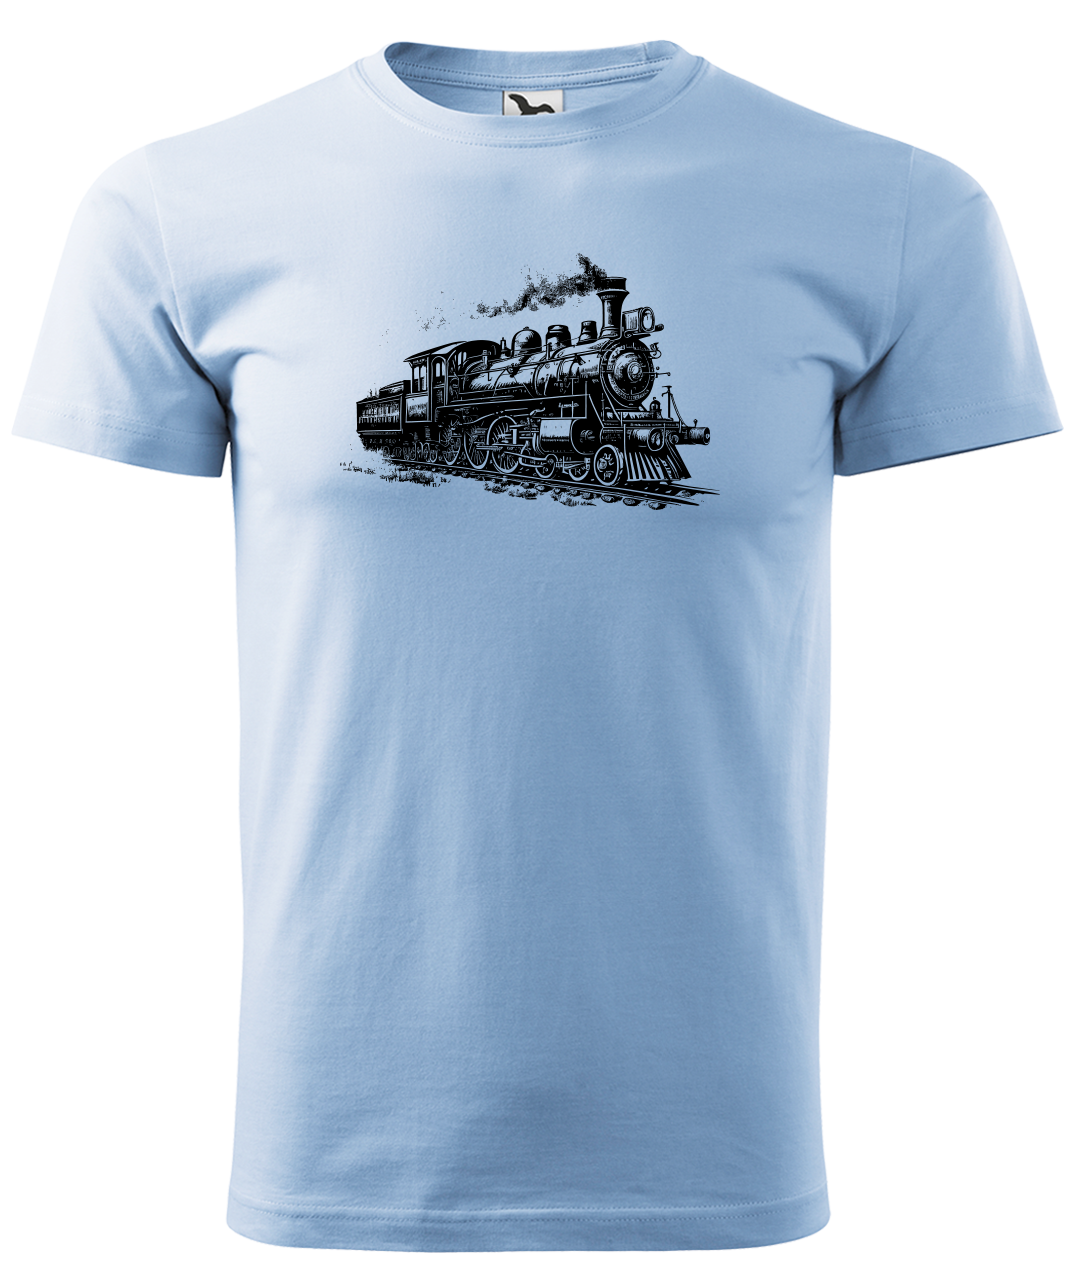 Dětské tričko s vlakem - Stará lokomotiva Velikost: 8 let / 134 cm, Barva: Nebesky modrá (15)